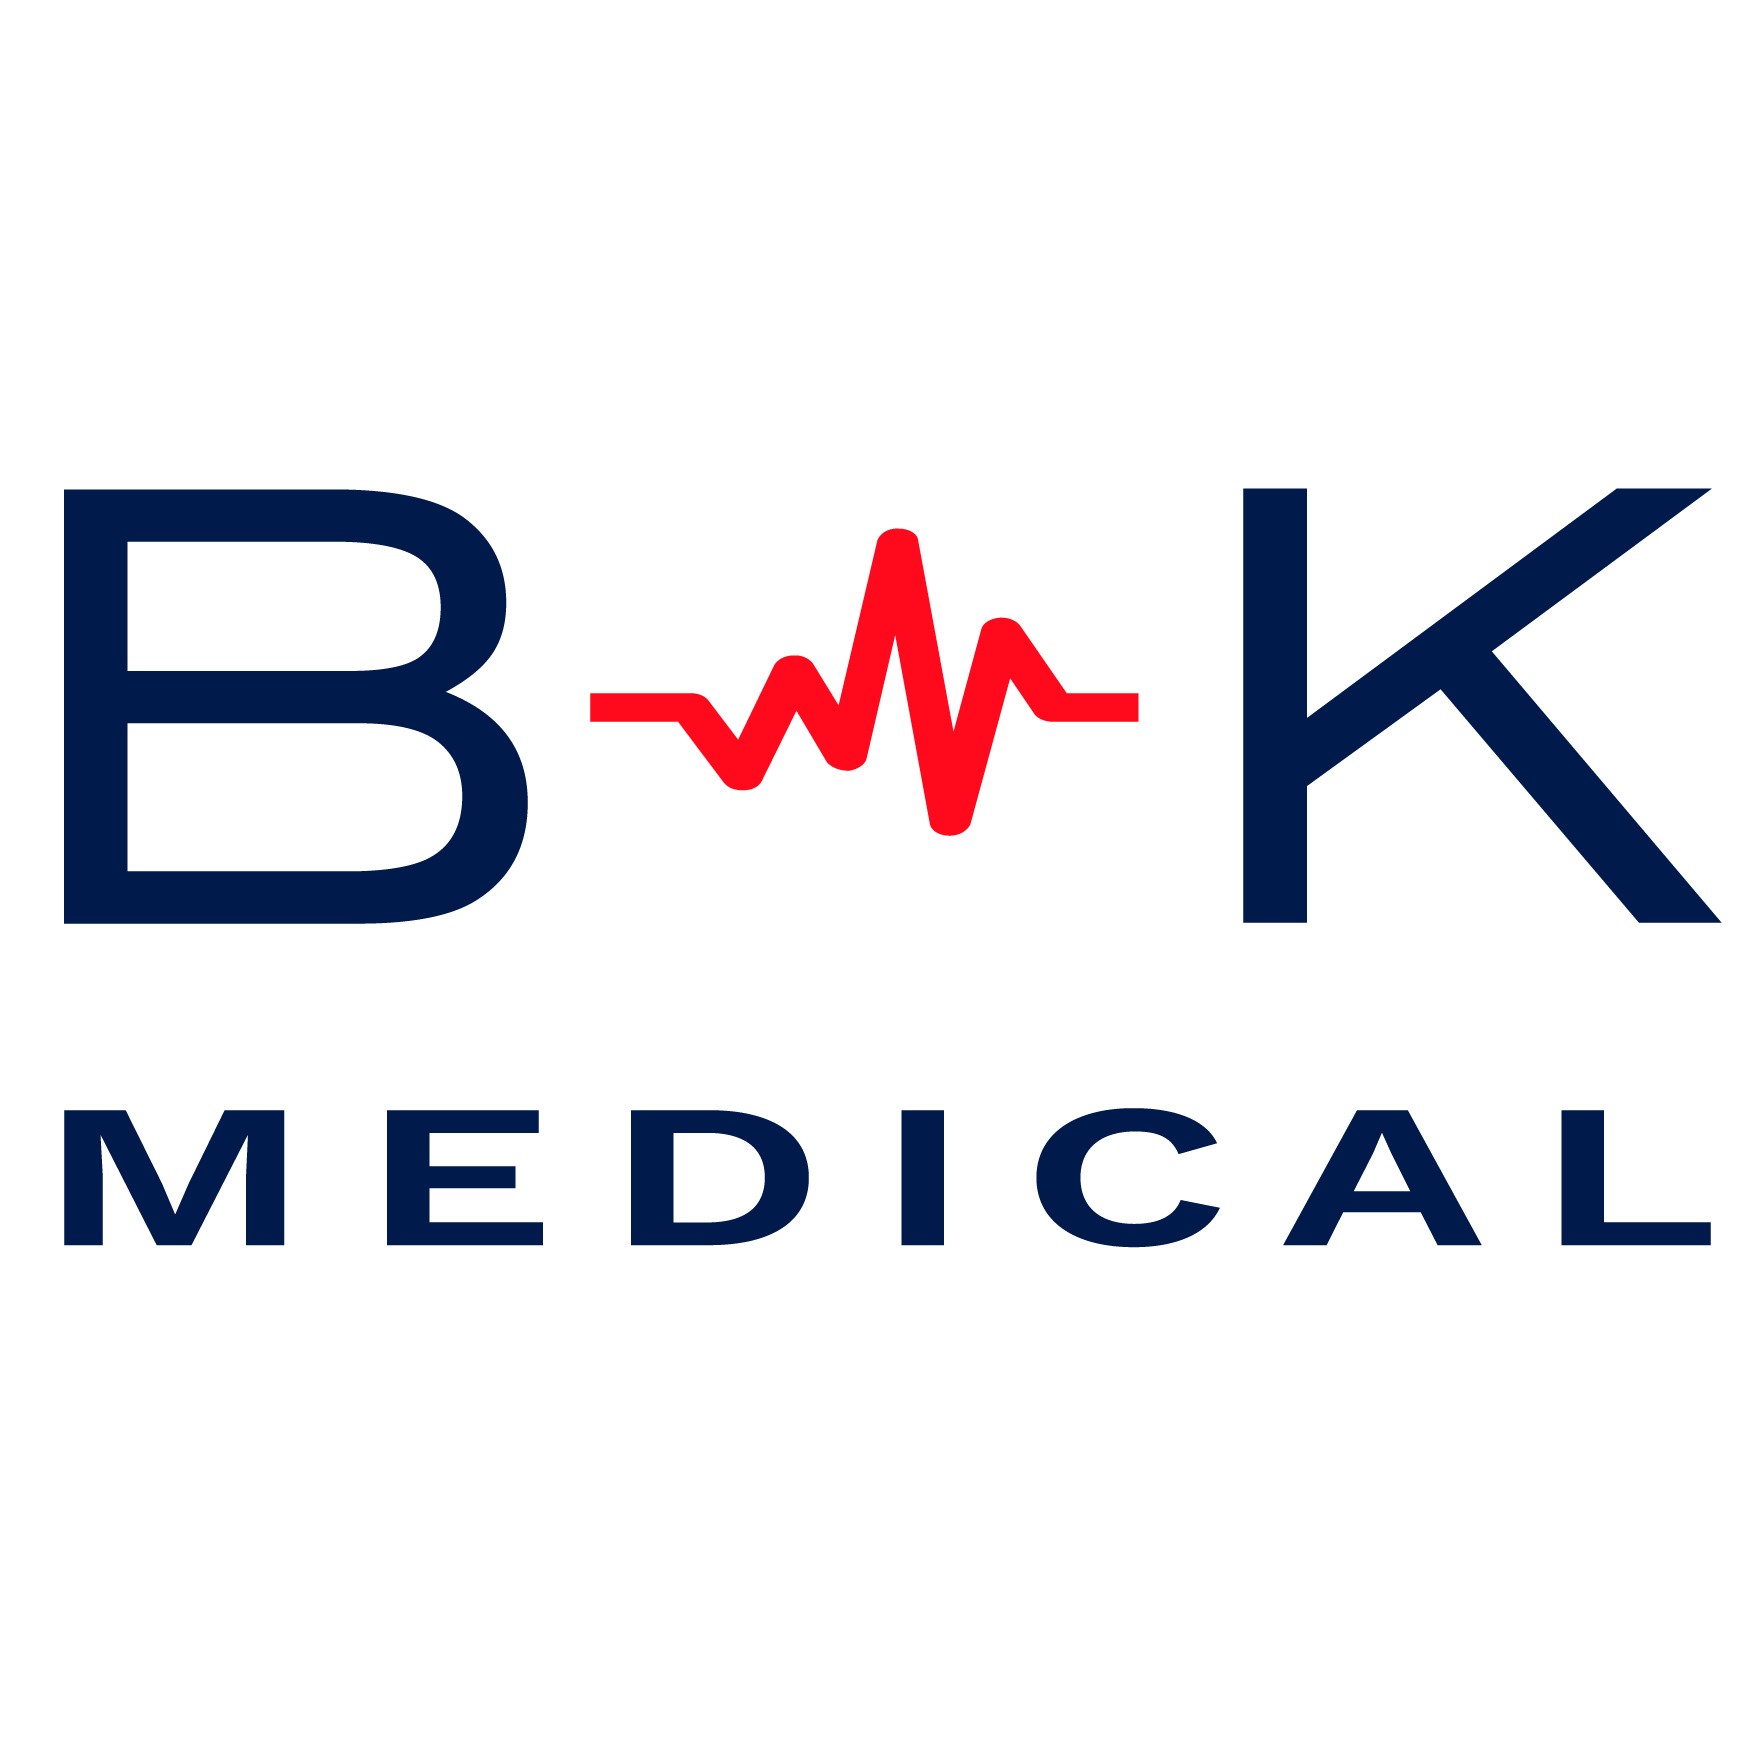 B&K Medical blau-rot.jpg